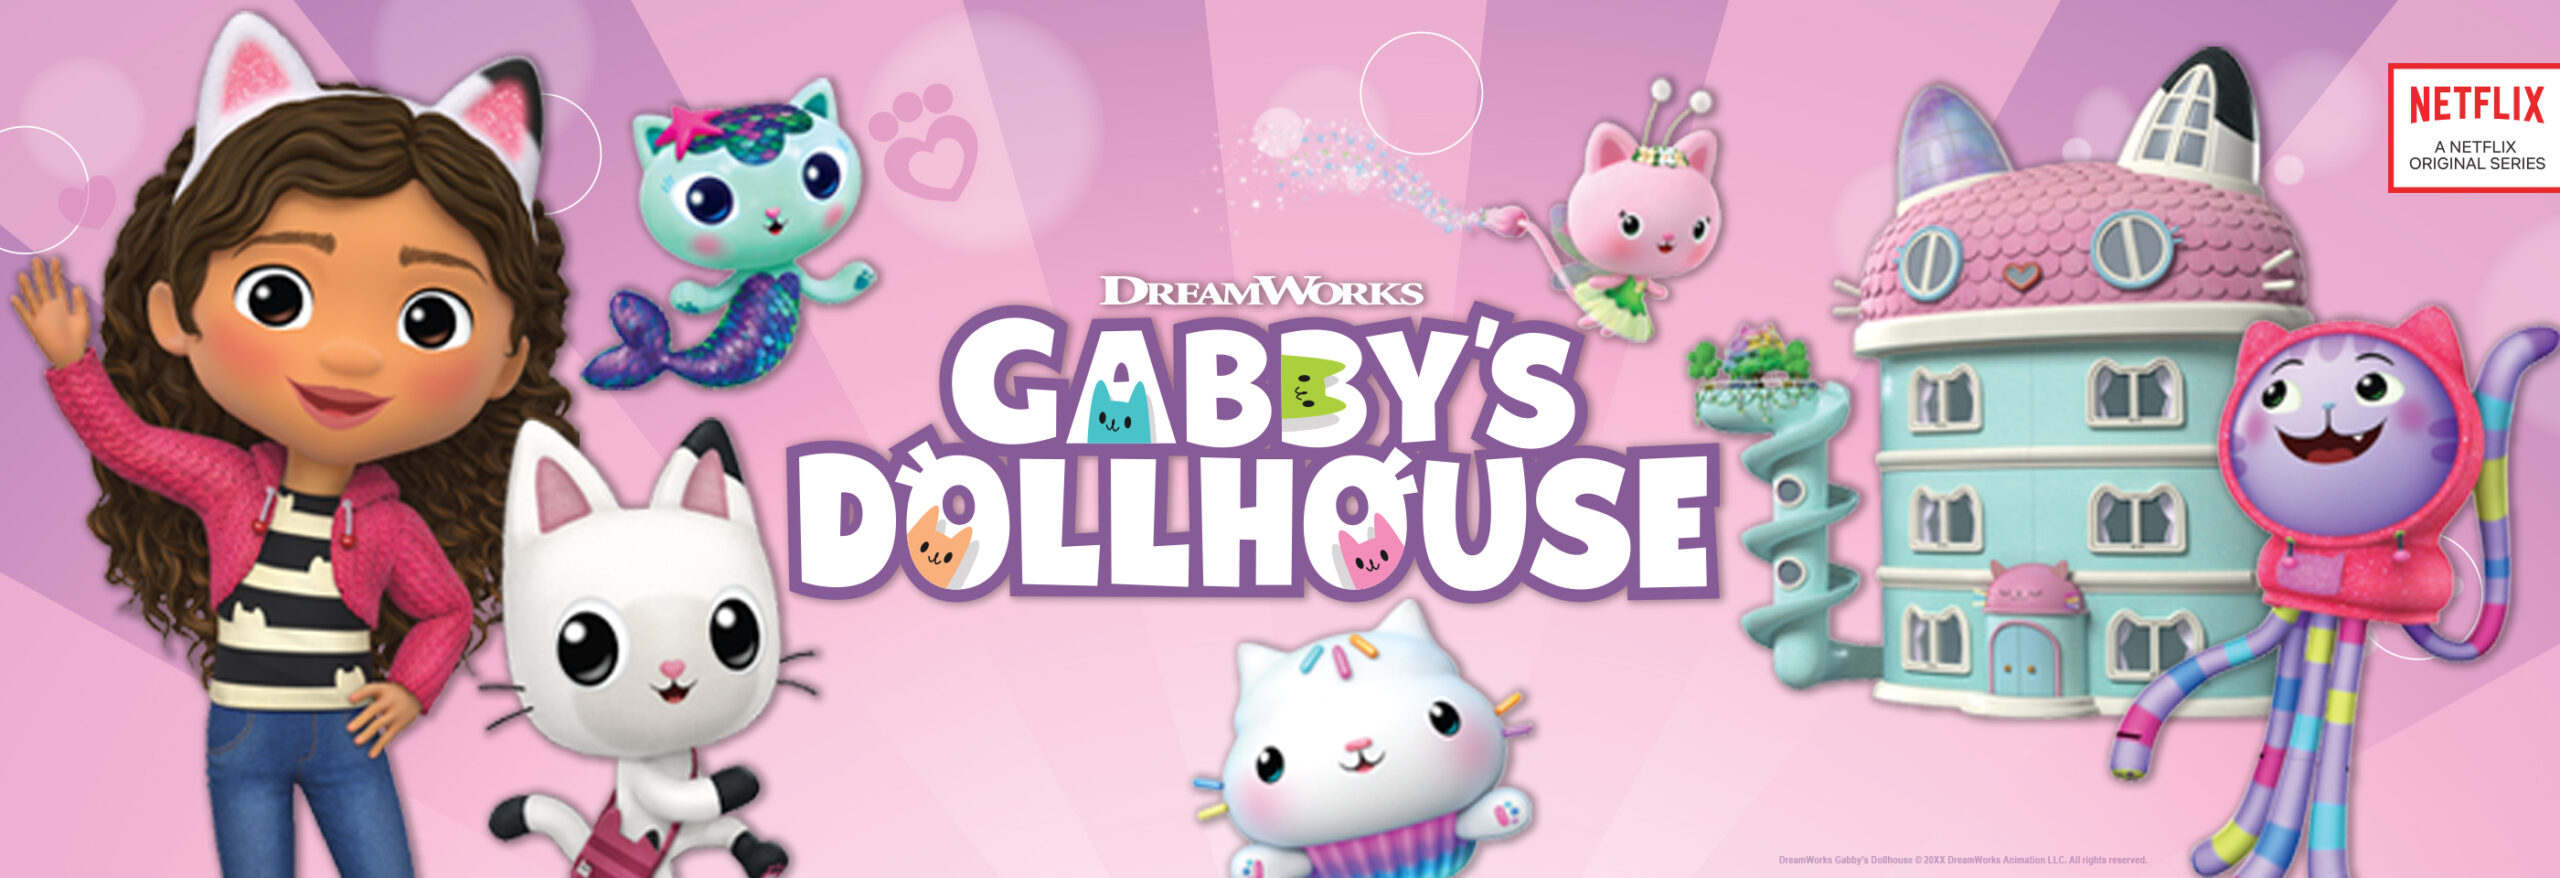 Gabby’s Dollhouse, Gabby Girl On-The-Go Pretend Play Travel Set